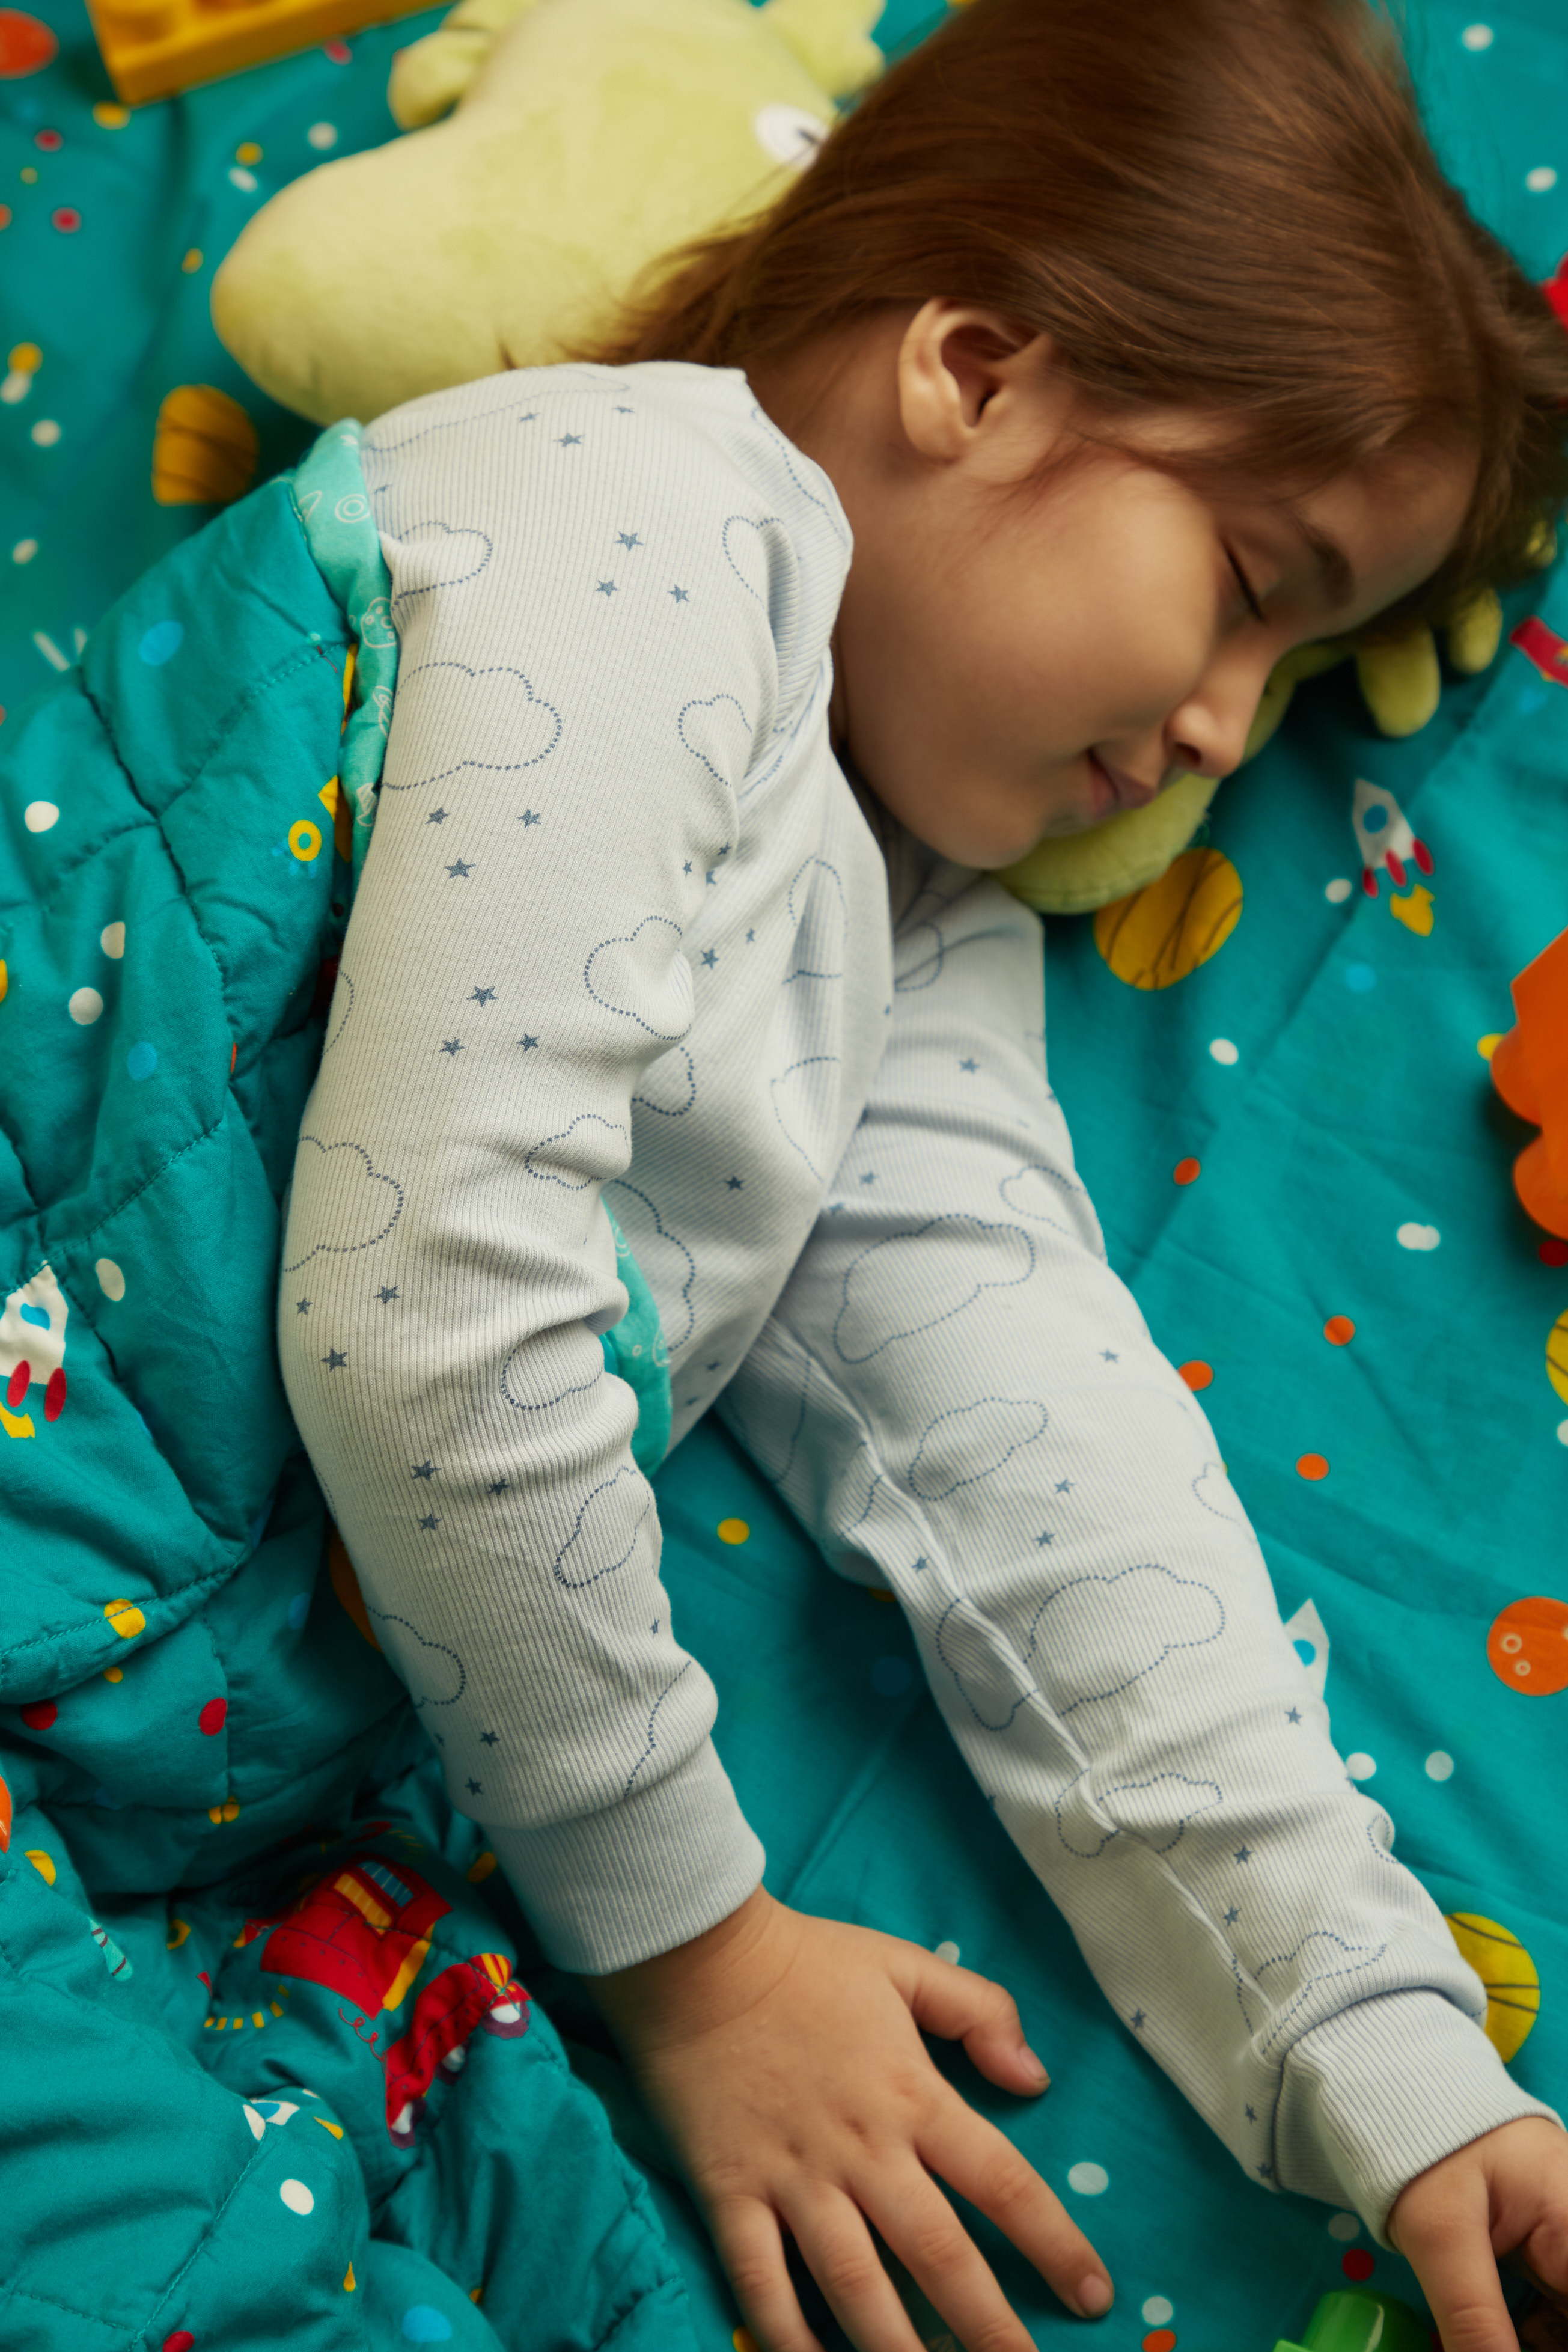 Blanket Guidelines Refresher – AZ Blankets 4 Kids